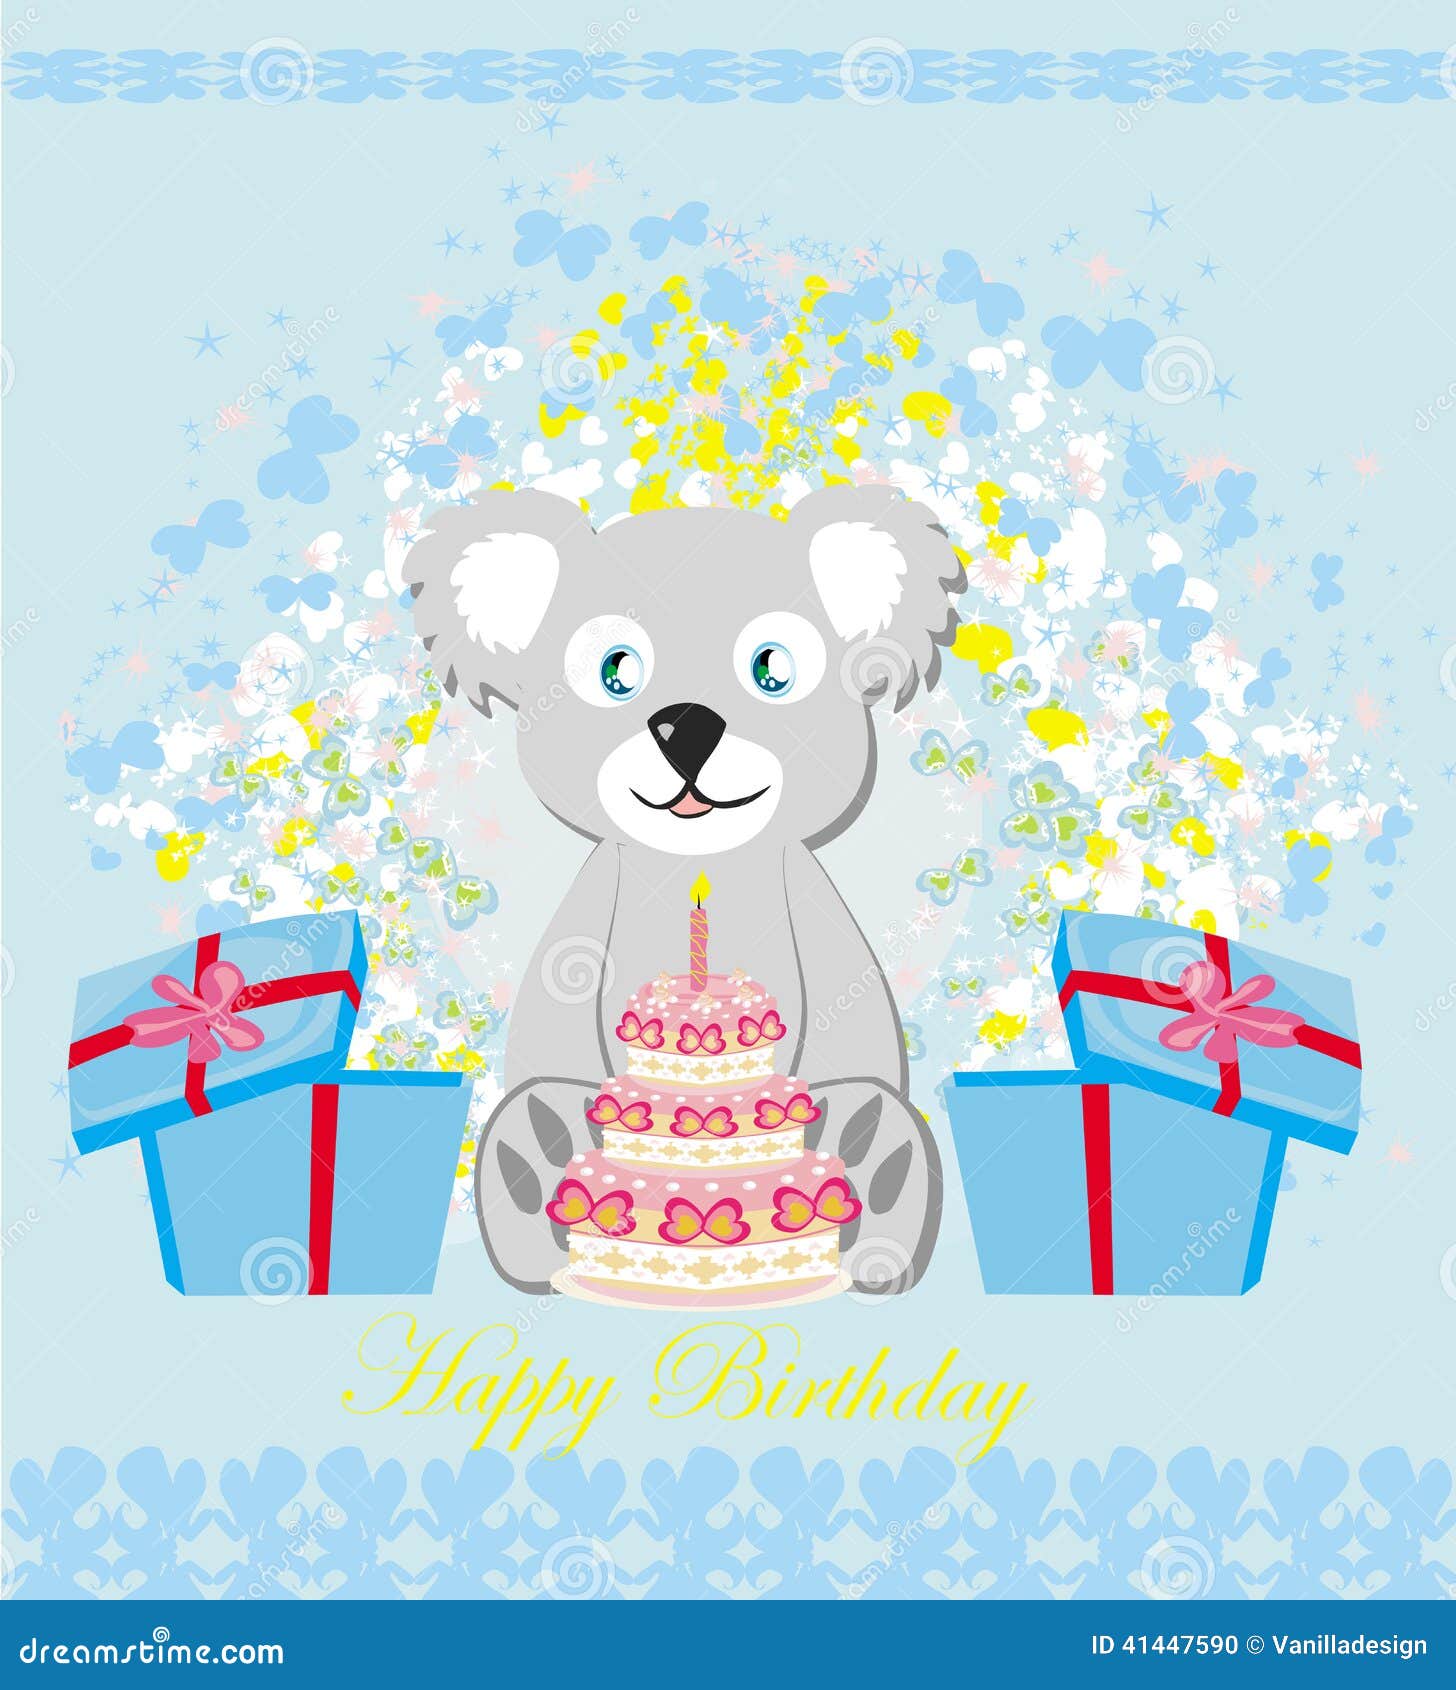 Birthday Card, Sweet Teddy Bear Holding a Birthday Cake Stock Vector ...